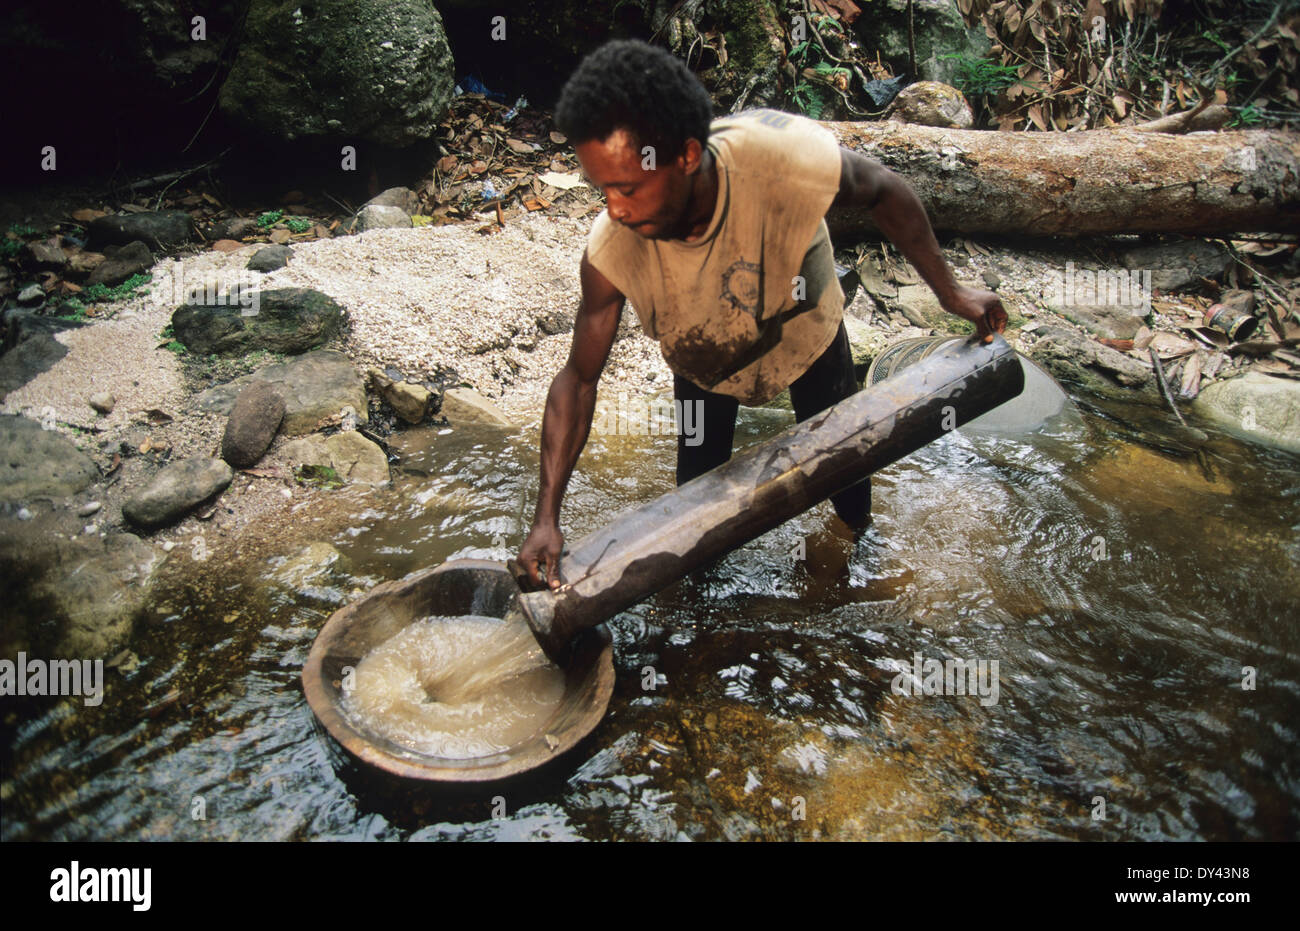 Los buscadores de oro y diamantes, cazadores, Santa Elena de Uairén, Venezuela, frontera con Amazonas, Fotografía de stock - Alamy